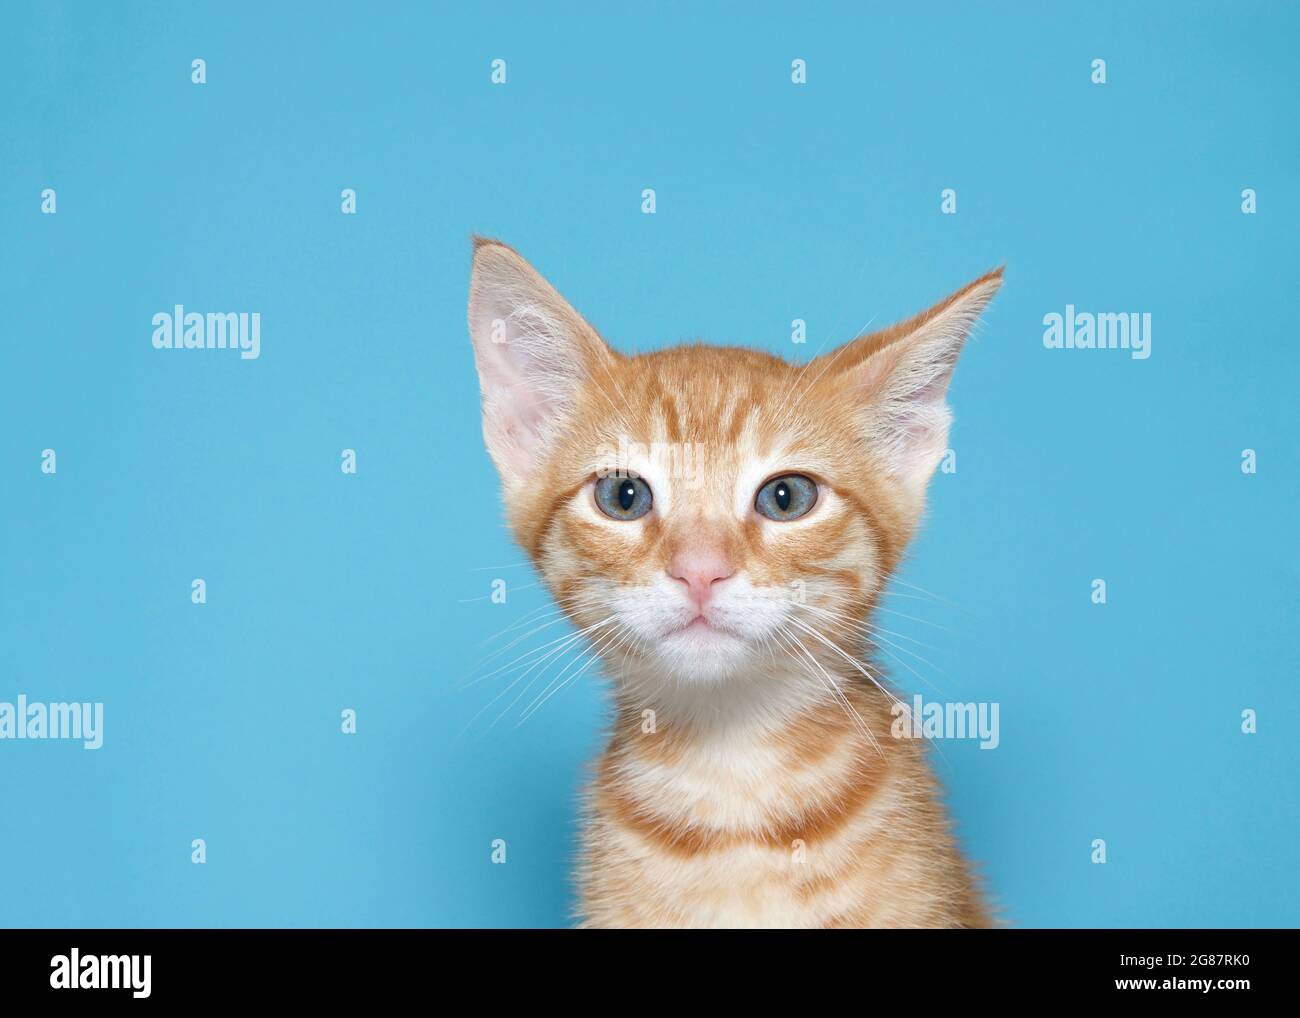 Ritratto di un gattino arancione che guarda curiosamente lo spettatore, un orecchio inclinato. Sfondo blu turchese con spazio per la copia. Foto Stock